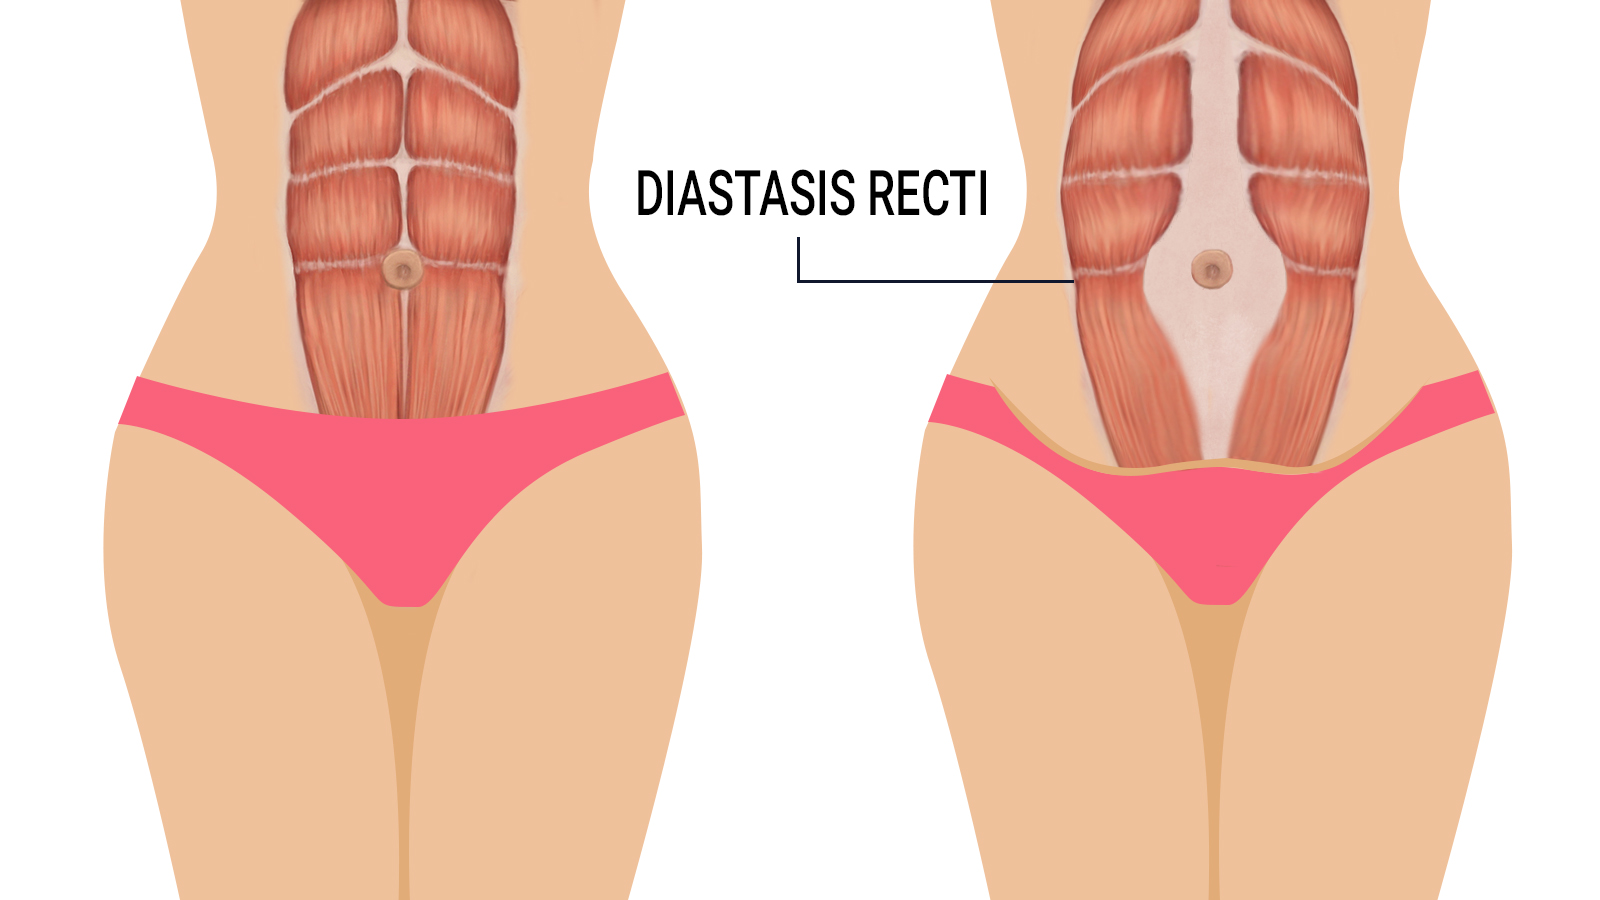 6 Exercises to Heal Diastasis Recti After Pregnancy